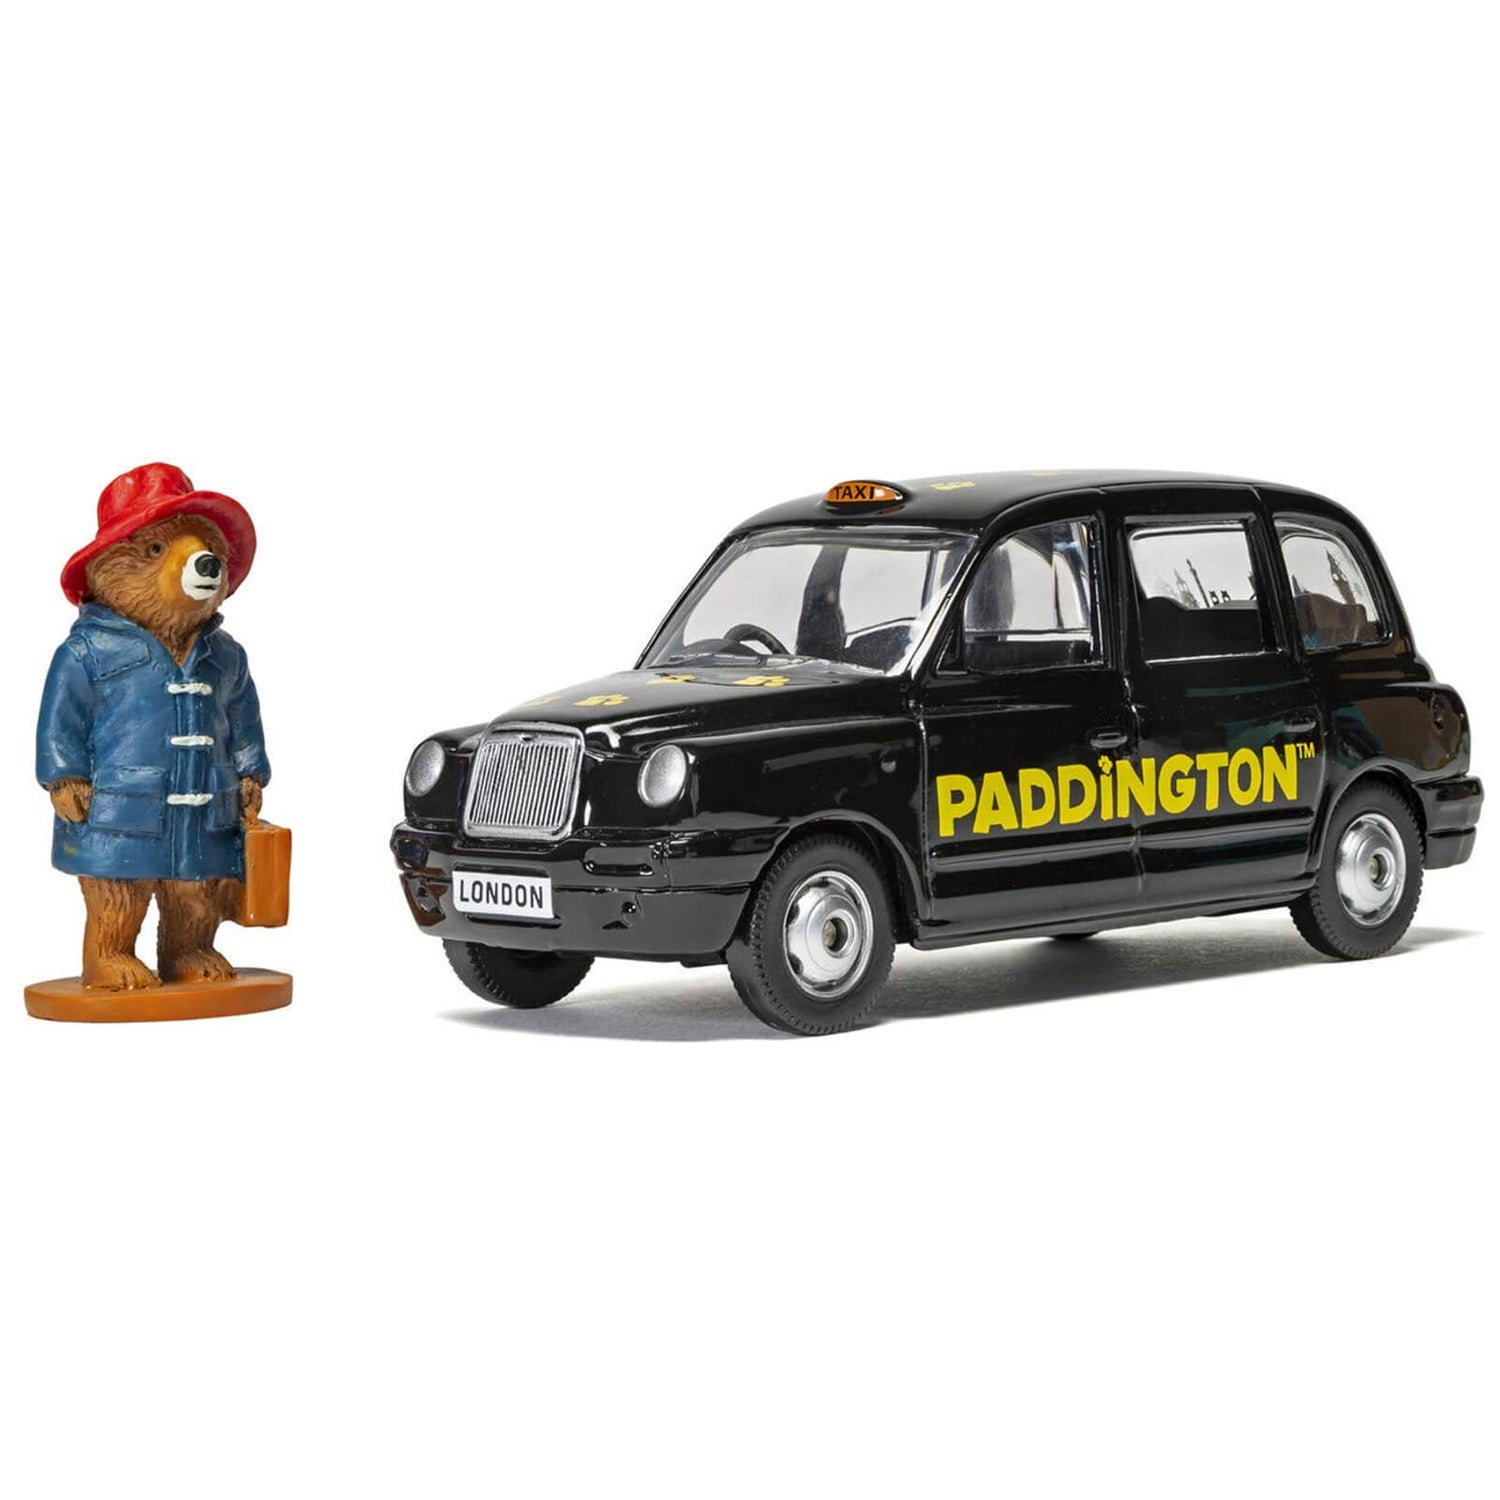 Beertje Paddington Londen Taxi en Beertje Paddington Figuur Modelset - Schaal 1:36